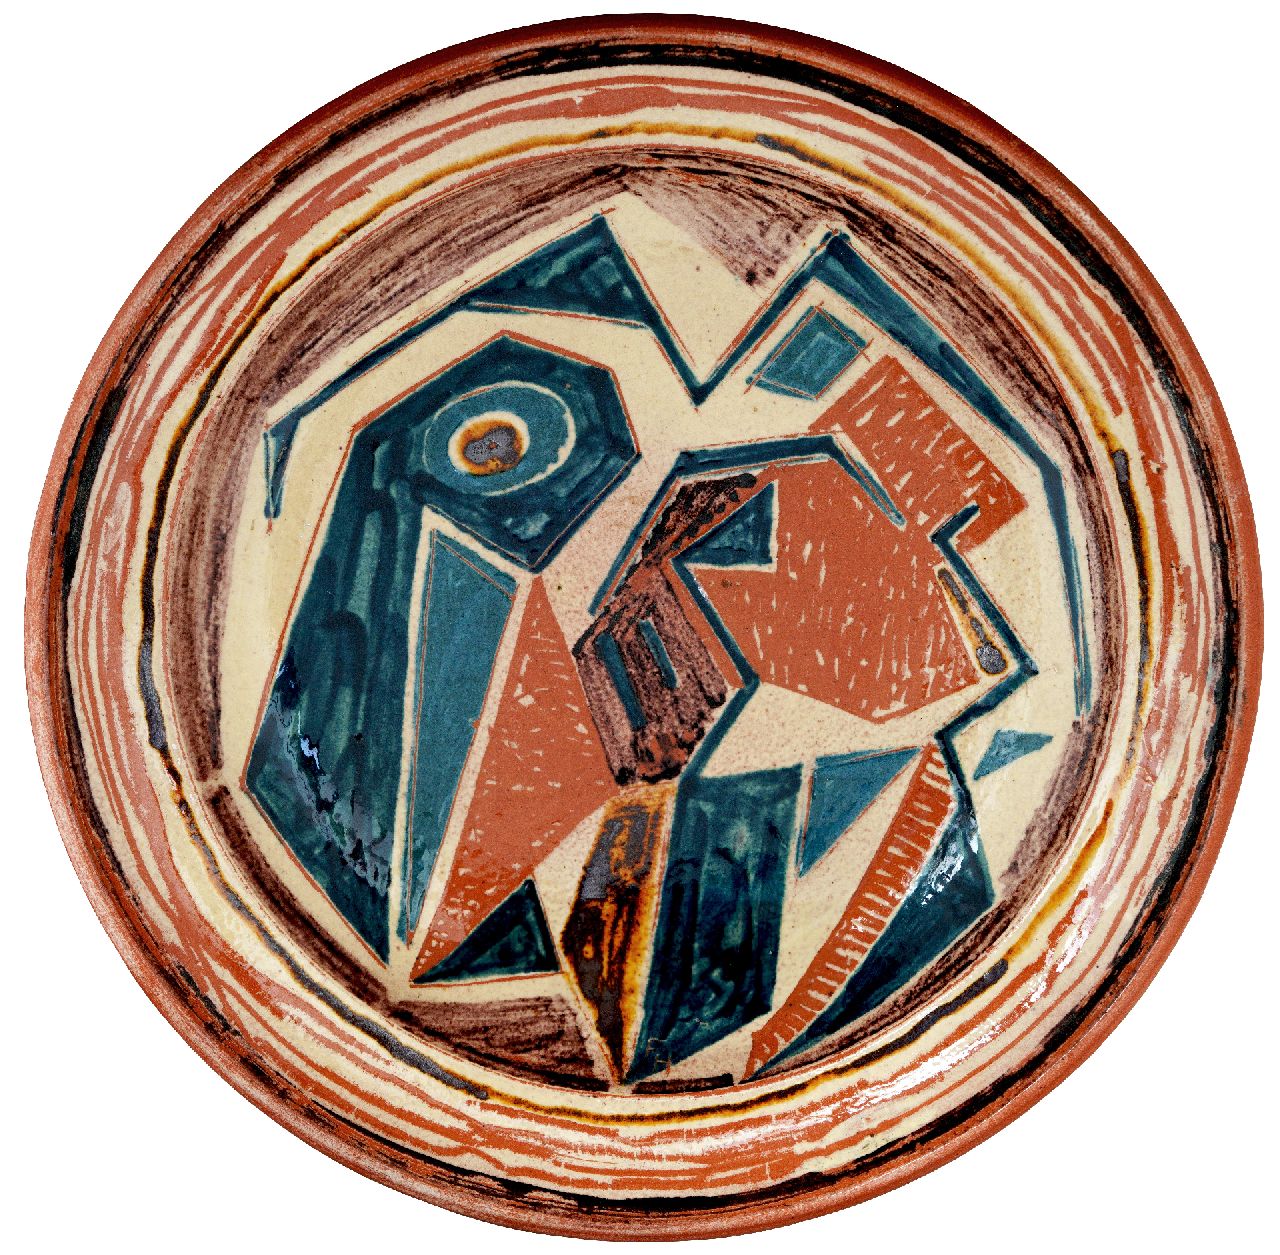 Hunziker F.  | Frieda Hunziker | Beelden en objecten te koop aangeboden | Keramieken schaal met compositie, geglazuurd aardewerk 34,2 x 34,2 cm